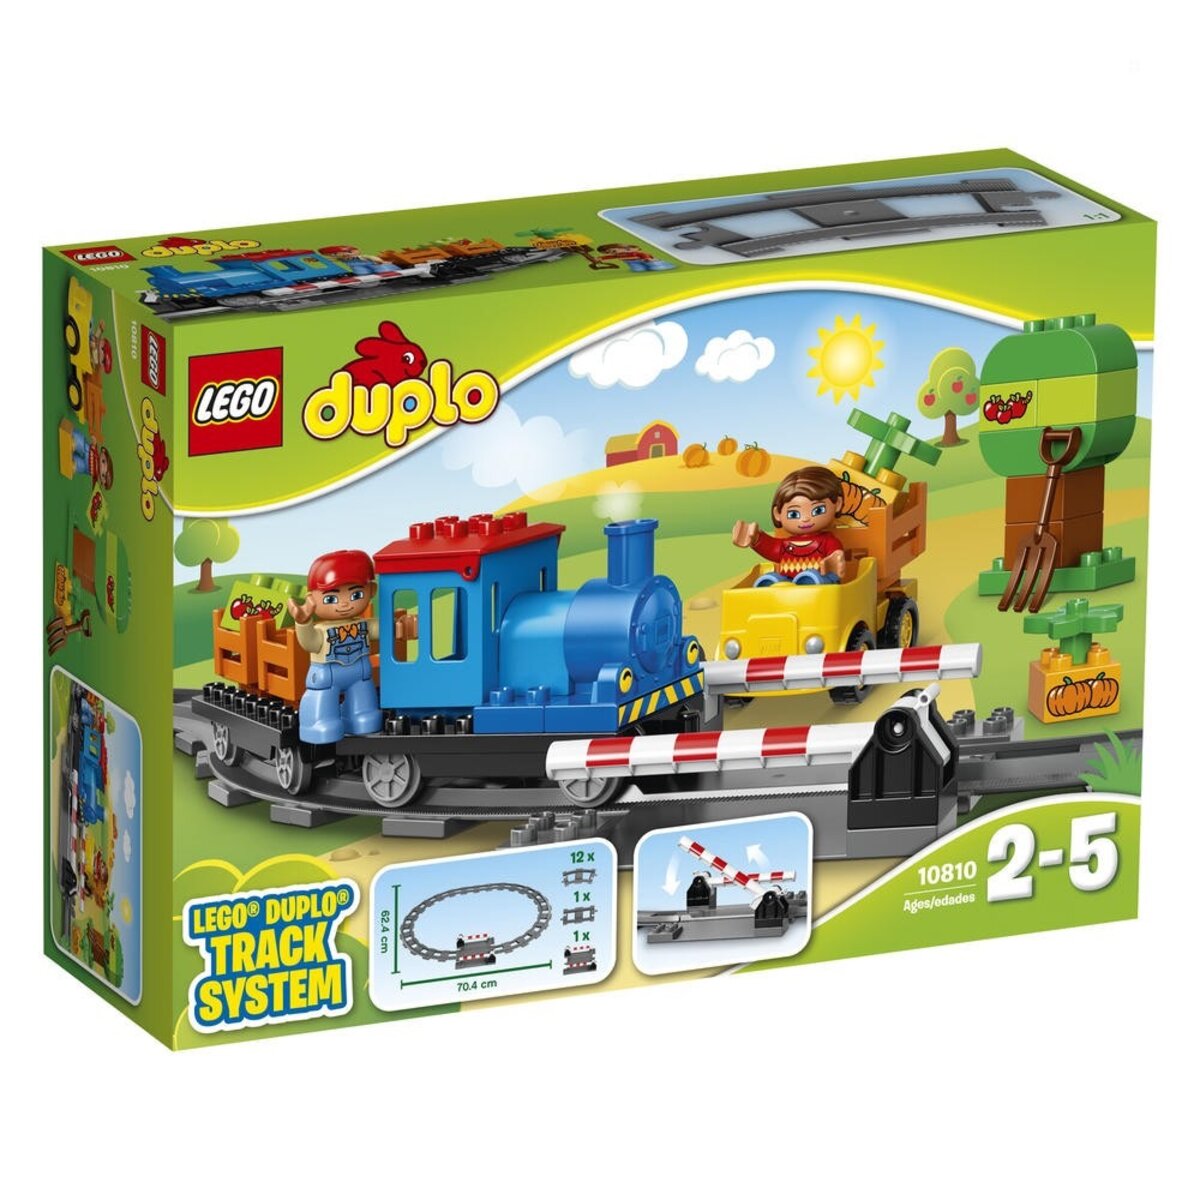 LEGO Duplo Town 10810 - Mon Premier Jeu De Train - La Poste